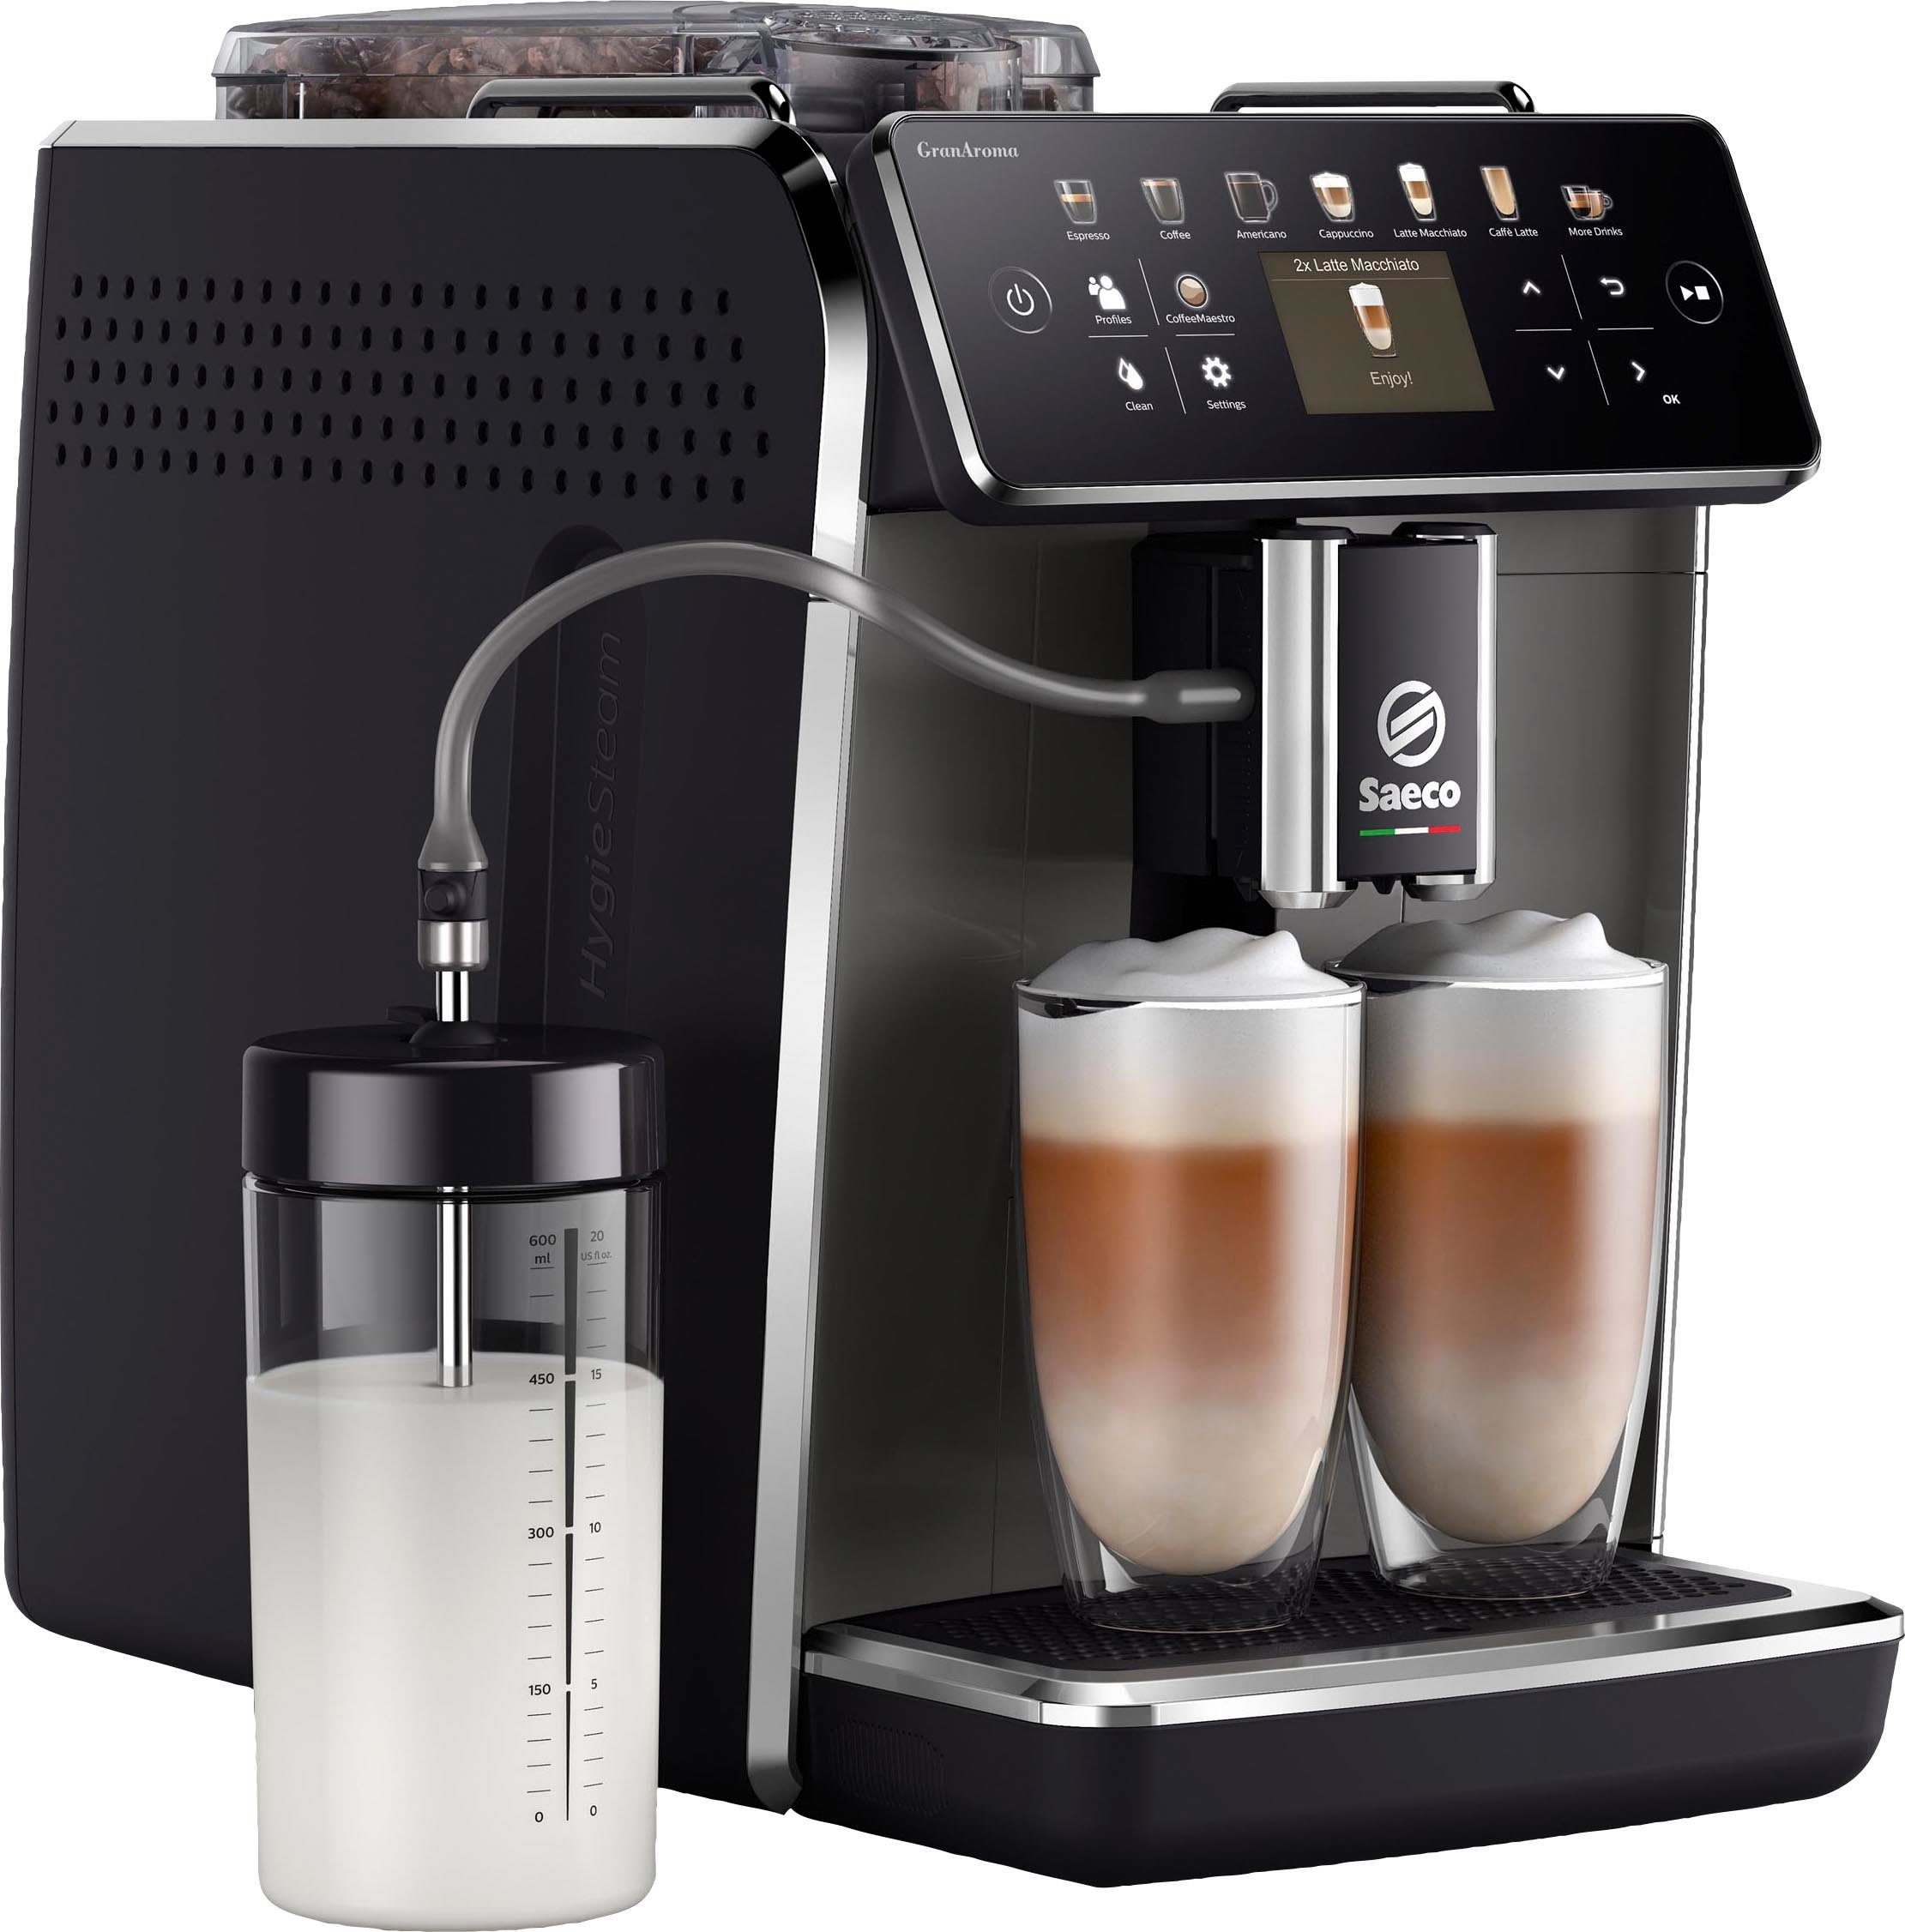 Saeco Kaffeevollautomat GranAroma SM6580/50, für 14 Kaffeespezialitäten, mit 4 Benutzerprofilen und TFT Display